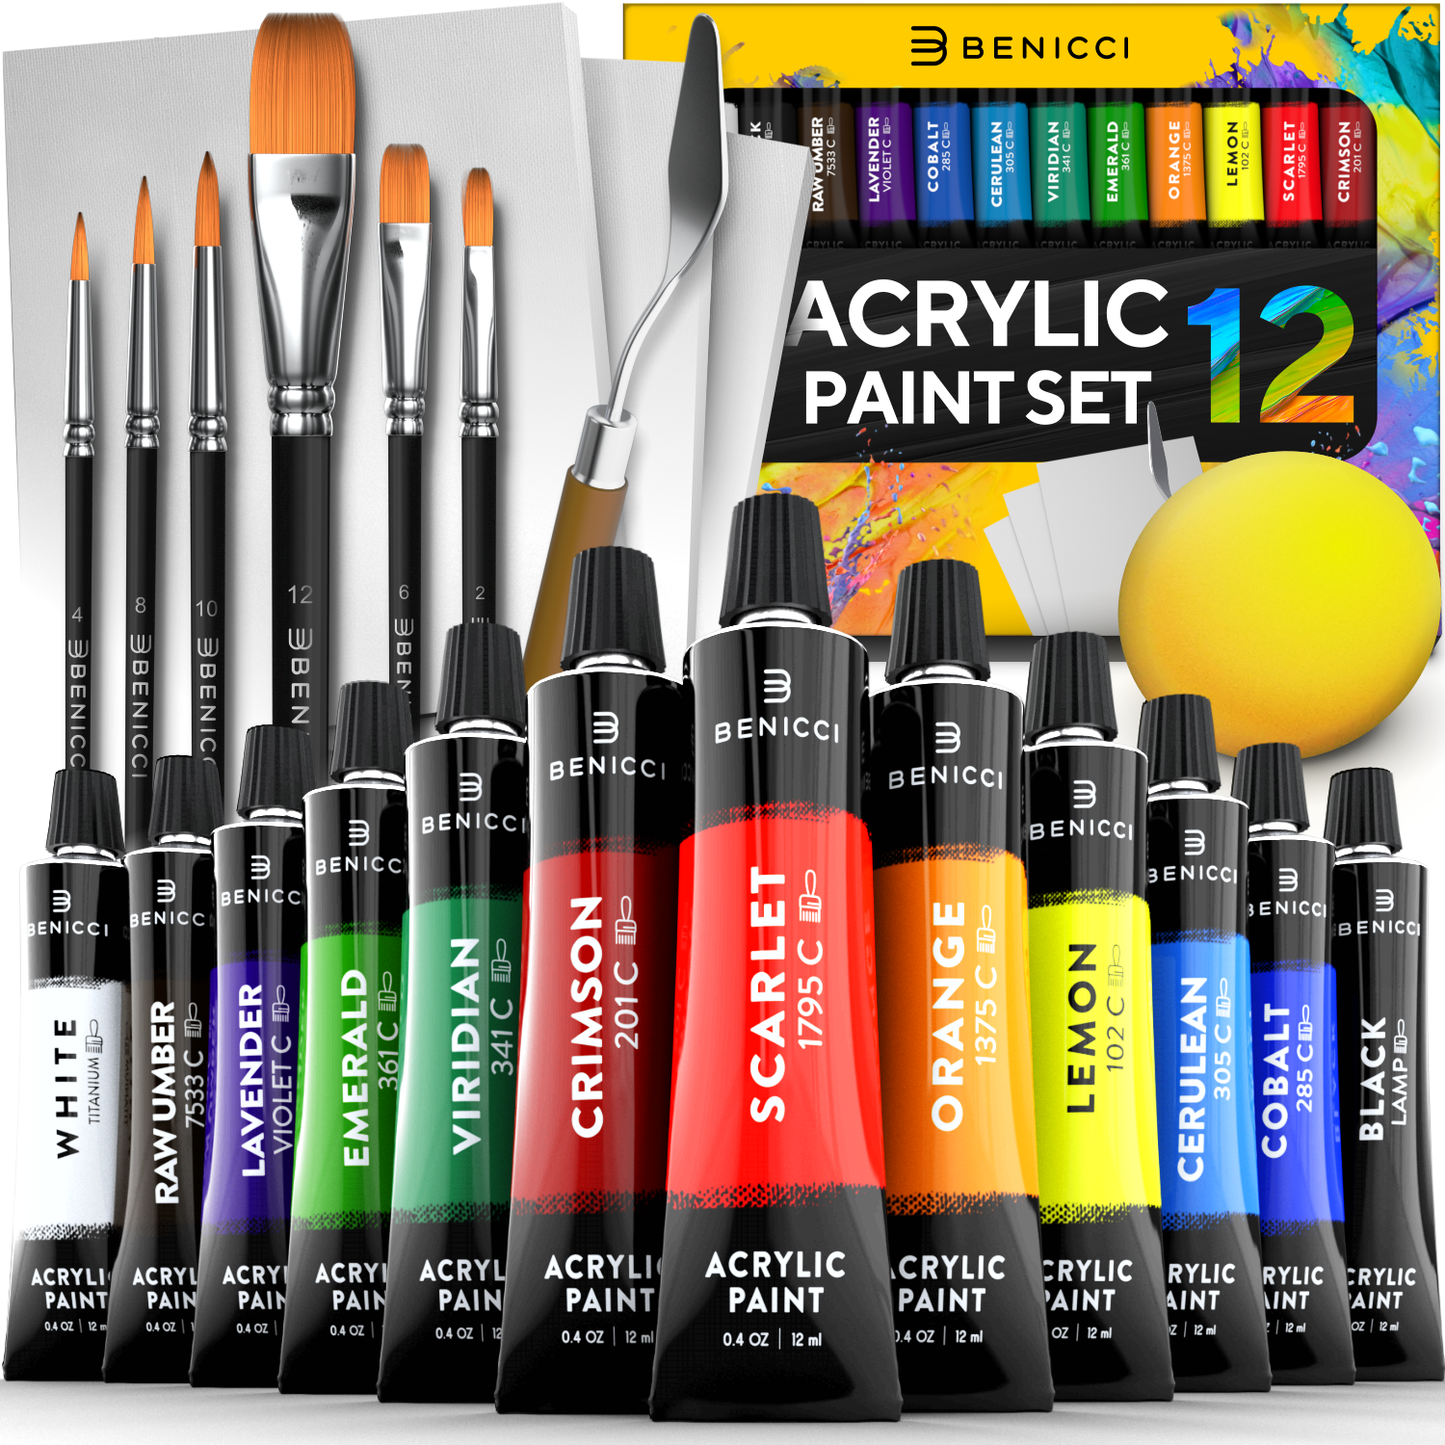 Metallic Acrylic Paint, Acrylic Paint Set, Acrylic Paint Brushes